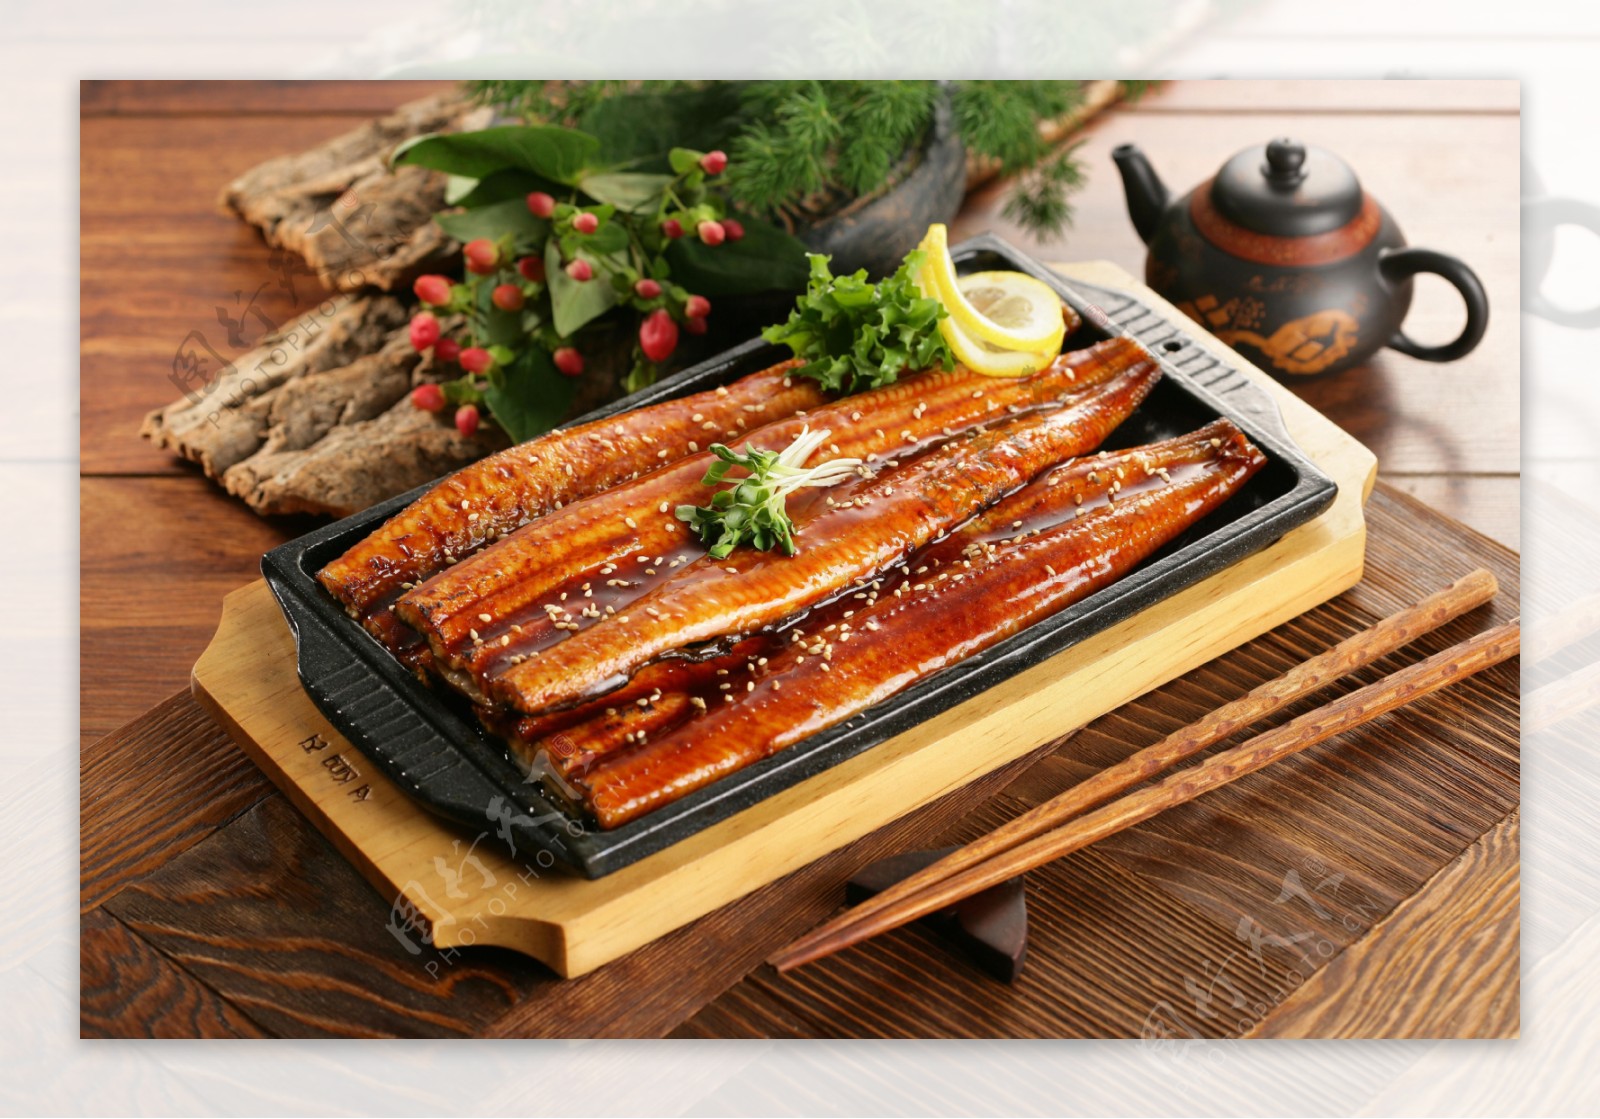 3个鳗鱼烤韩文样式 库存图片. 图片 包括有 汉城, 调味汁, 韩国, 空白, 食物, 香料, 可口, 韩文 - 24651345